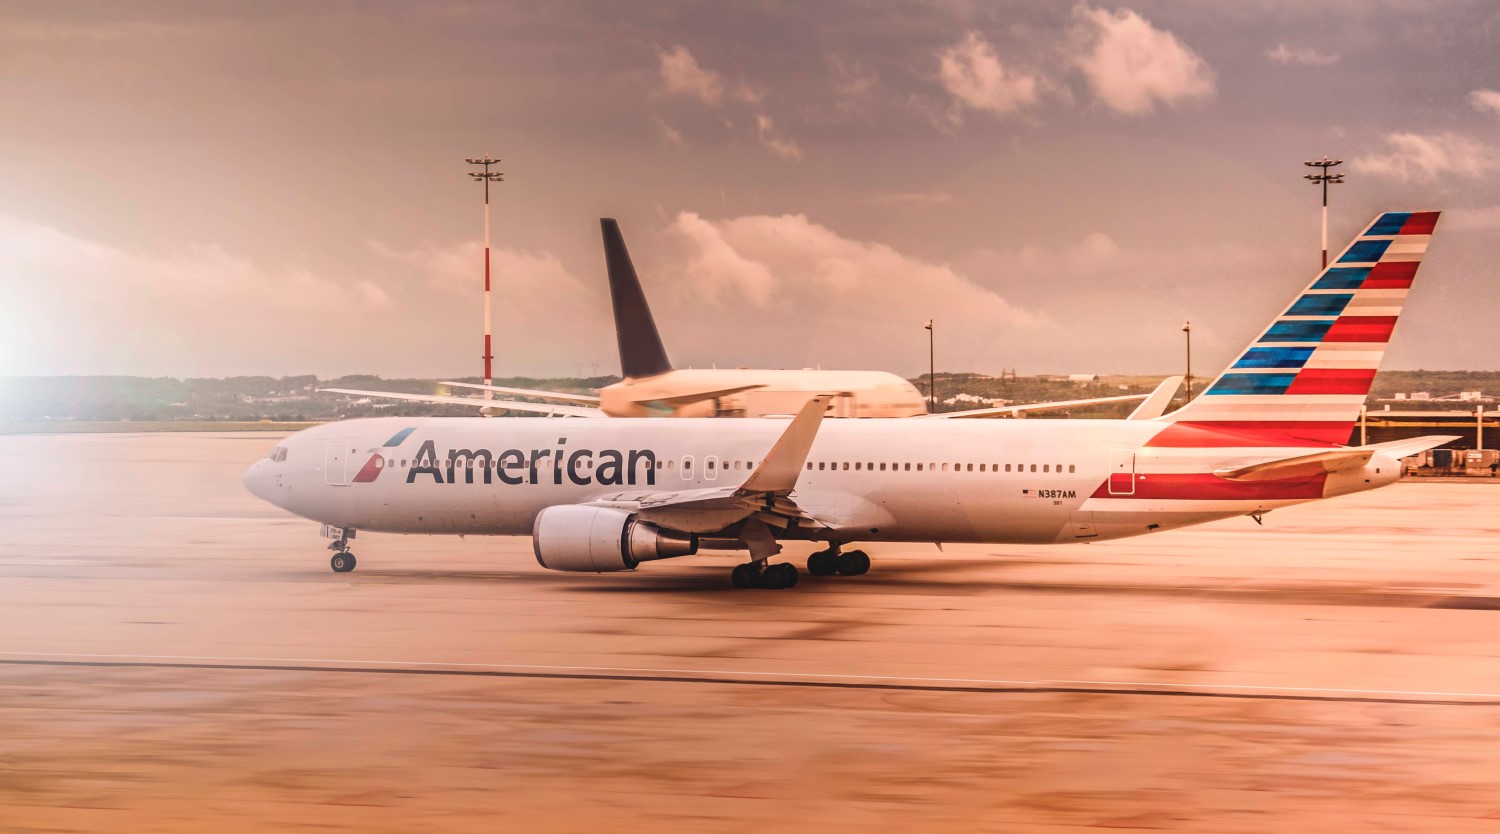 American Airlines una de las lineas aereas con mas rutas en el mundo